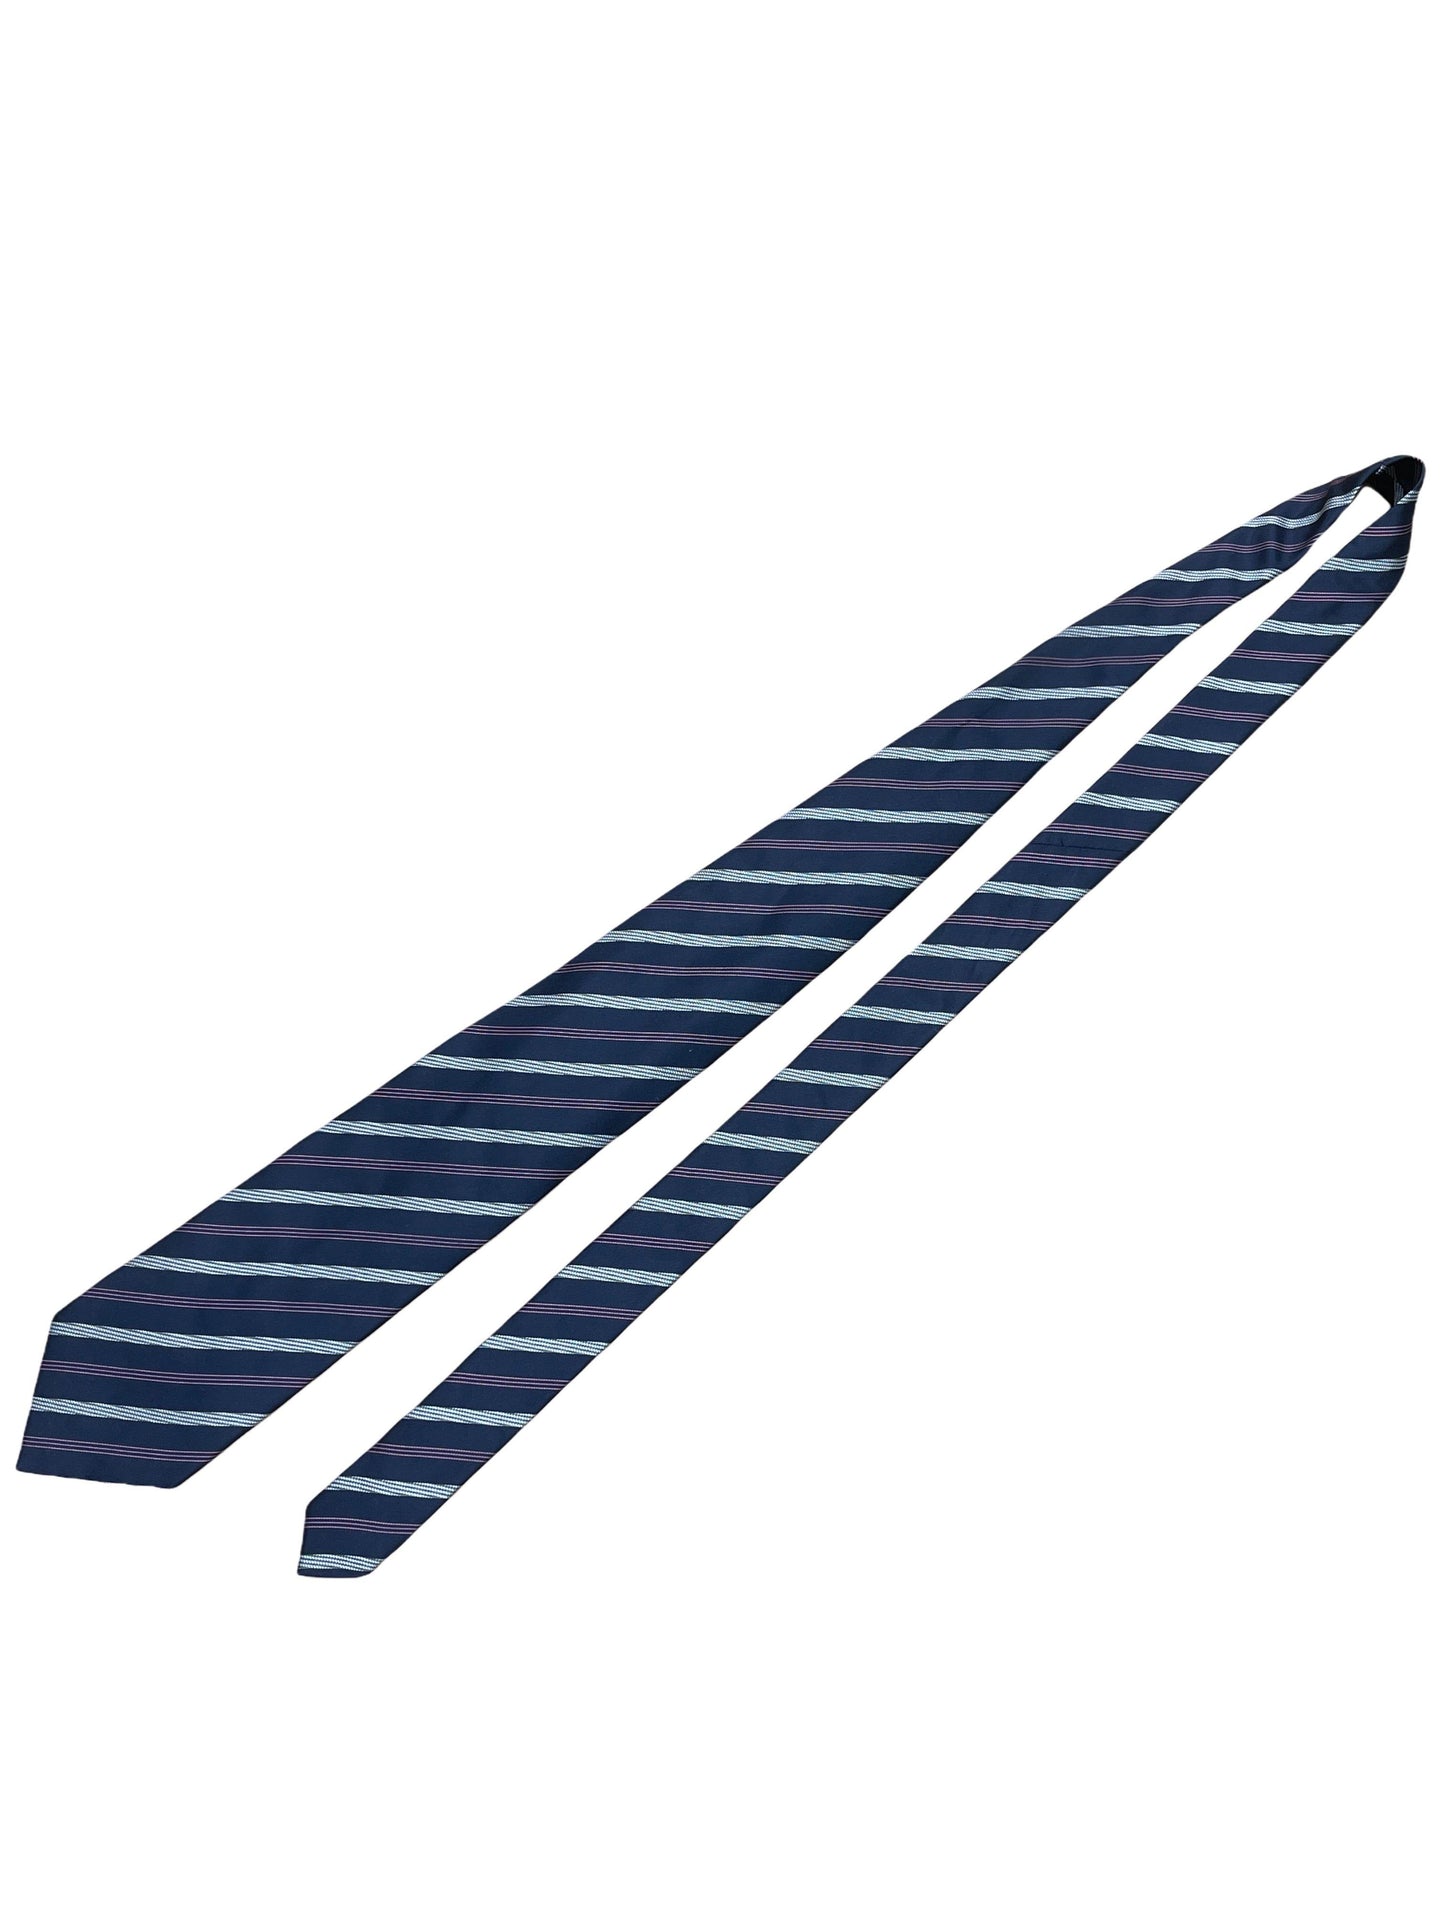 Hugo Boss blue striped tie - Genuine Design